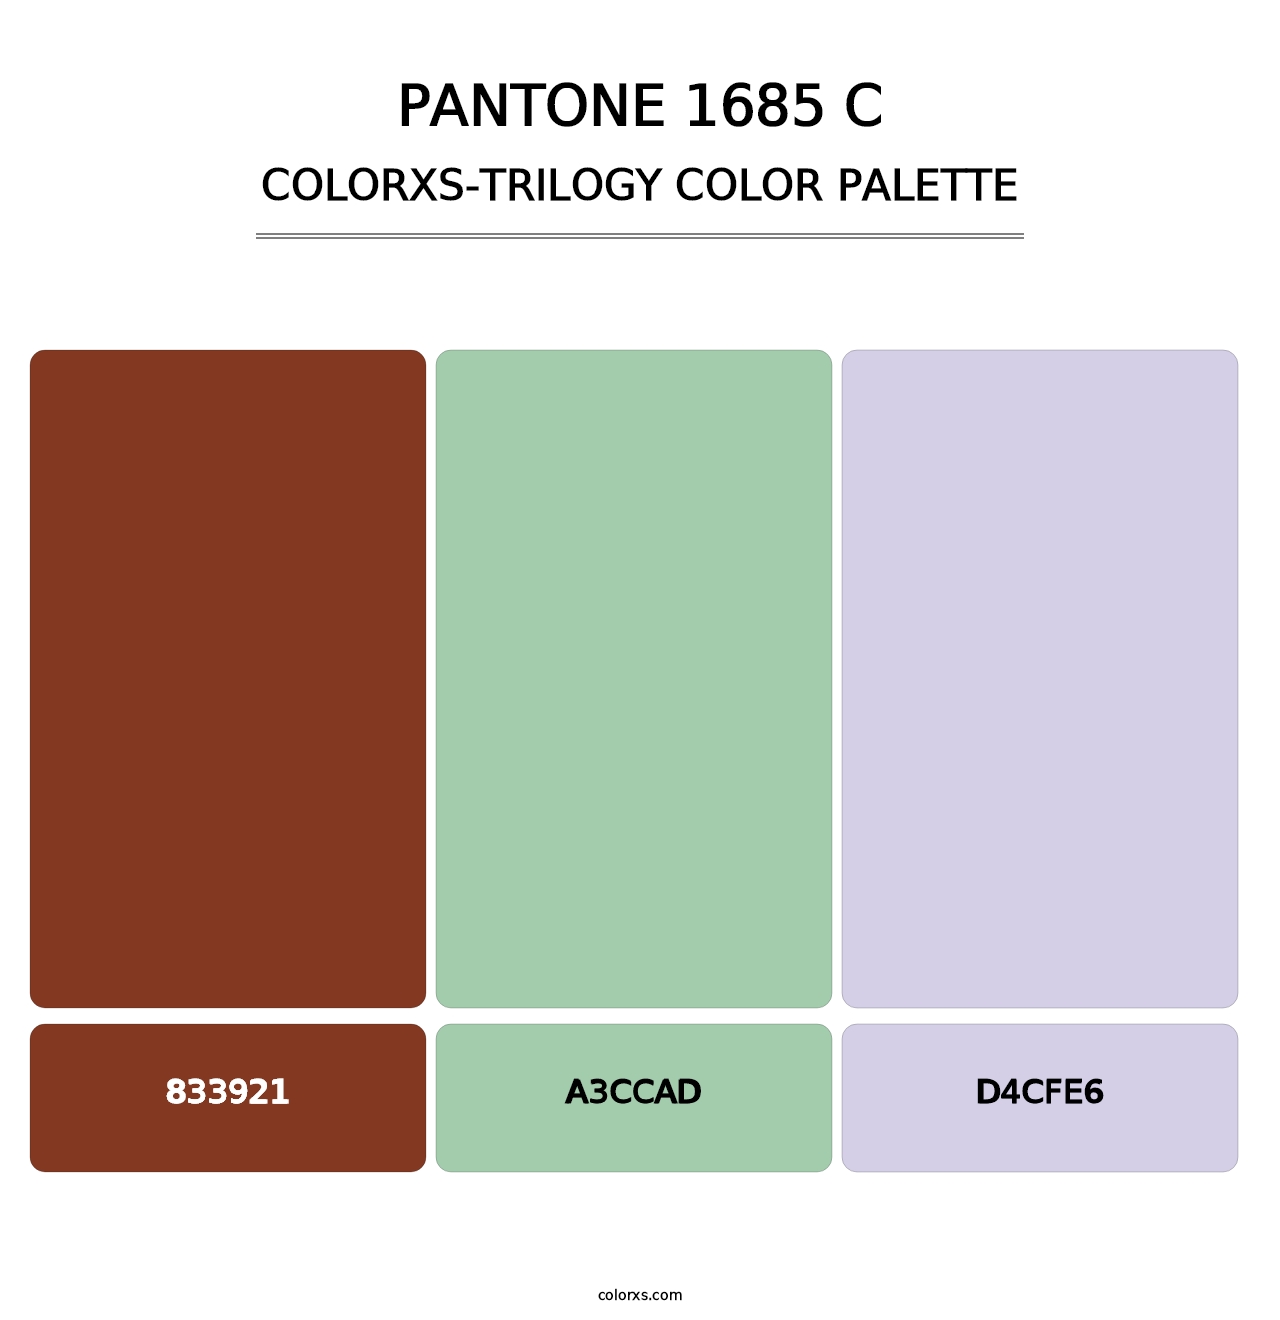 PANTONE 1685 C - Colorxs Trilogy Palette